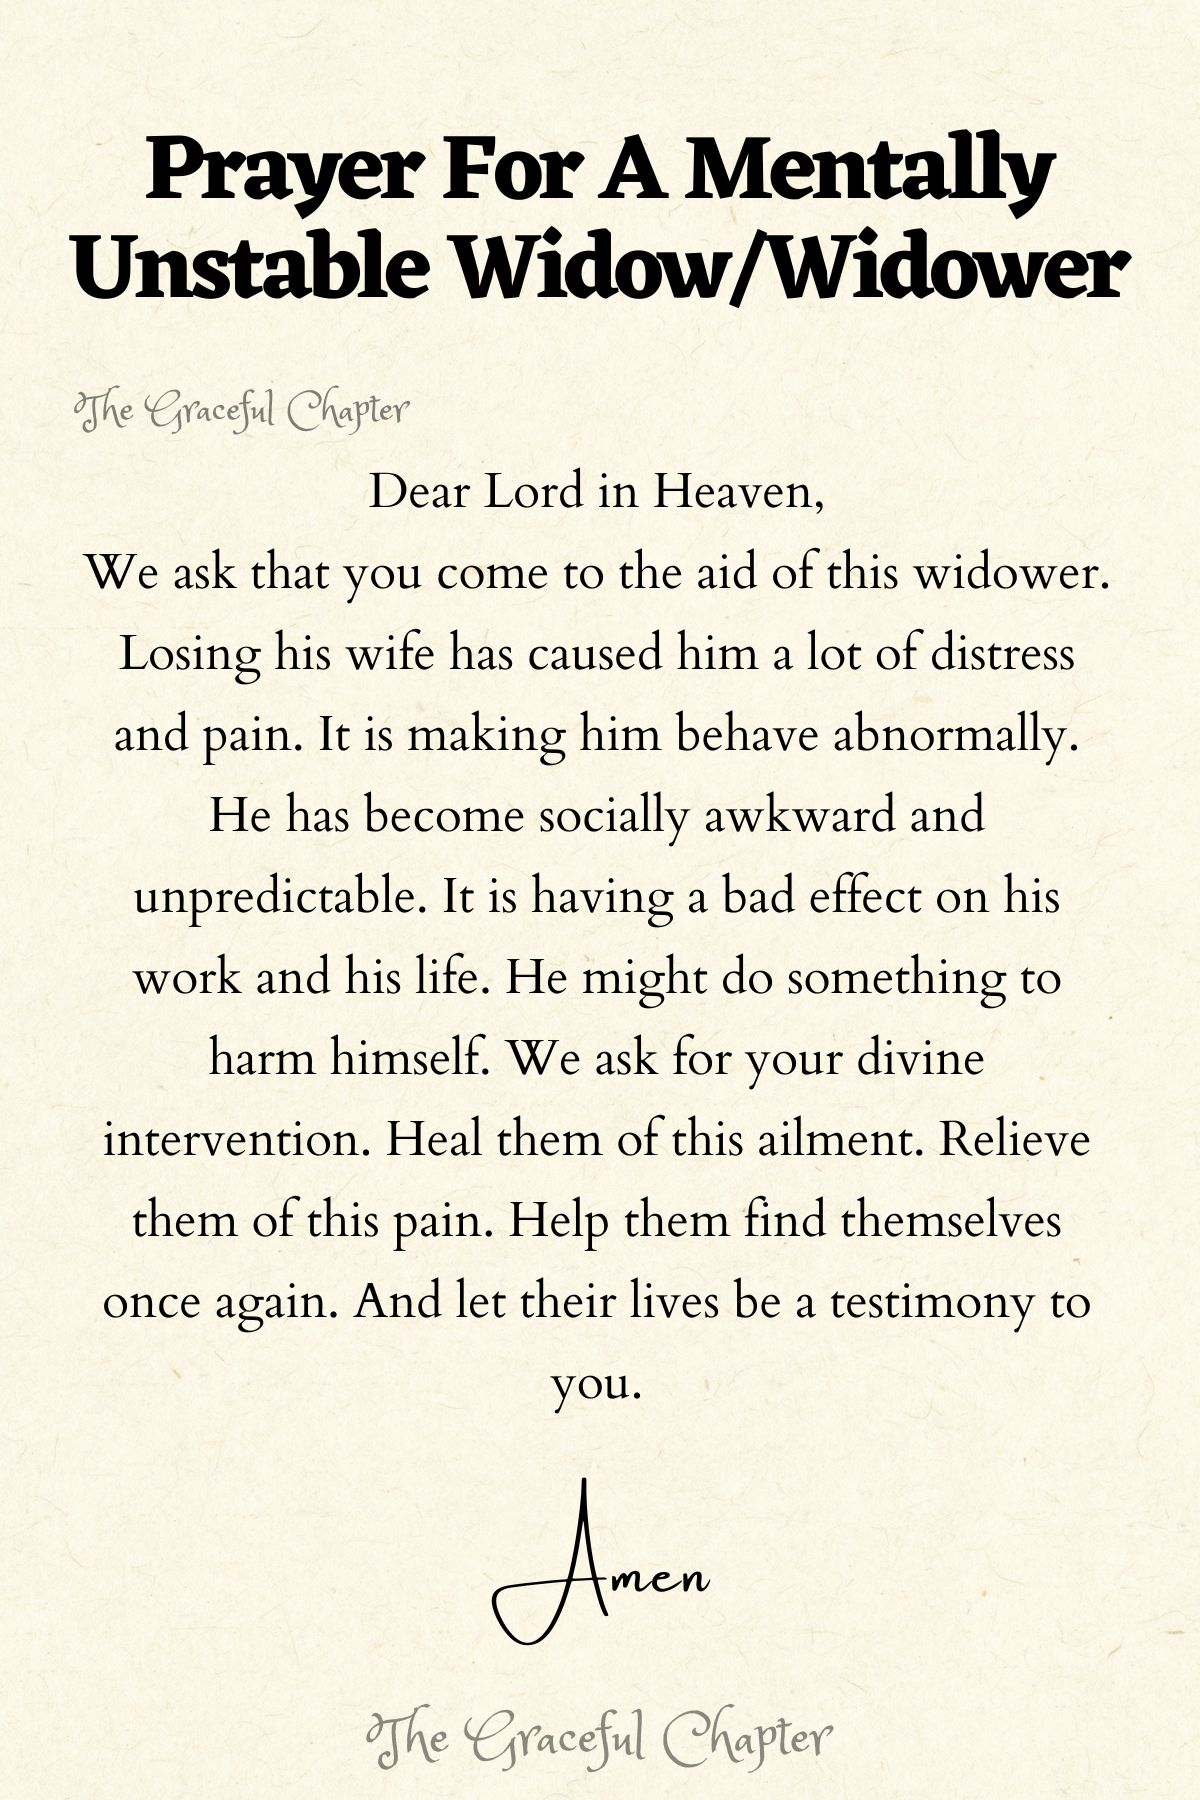 Prayer for a mentally unstable widow/widower